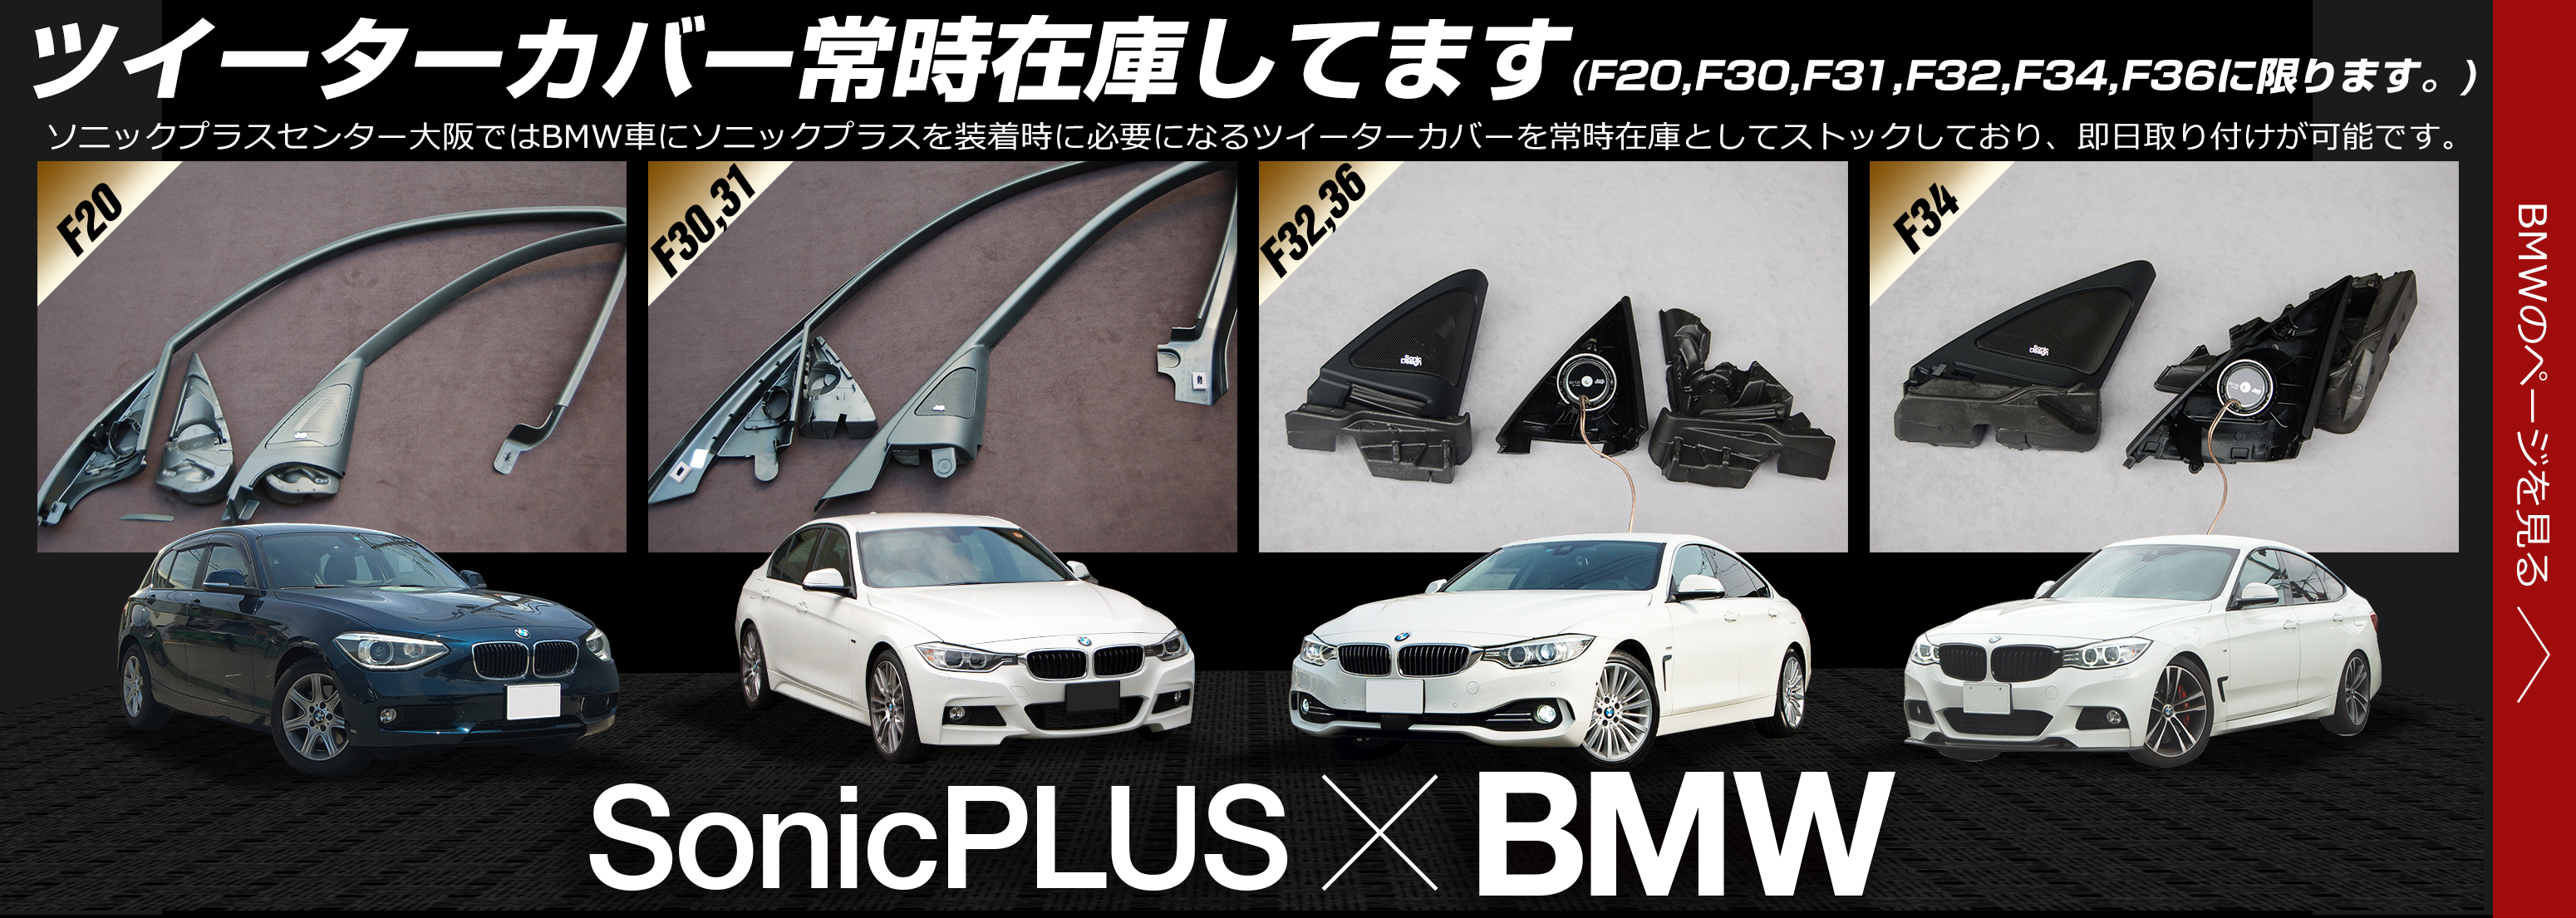 SonicPLUS BMW専用モデル|ソニックプラスセンター大阪